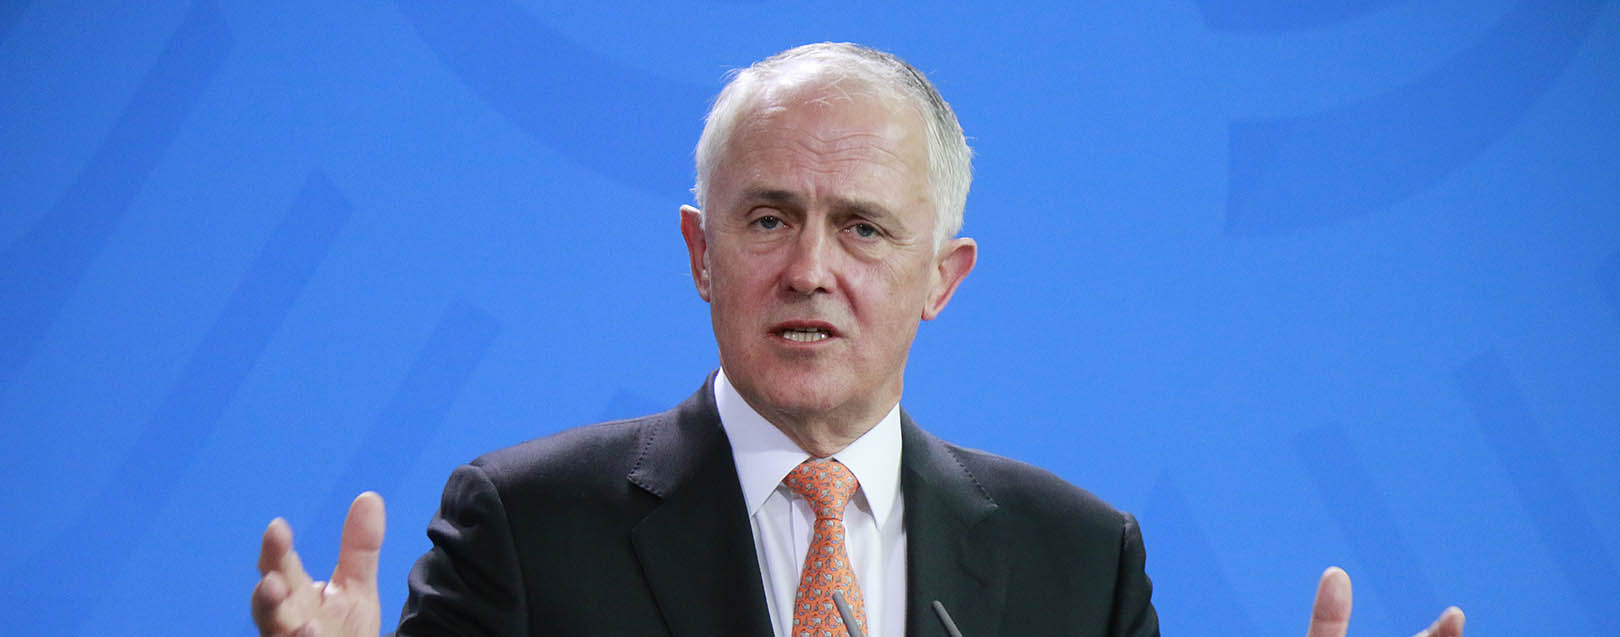 Jaitley meets Aus PM Turnbull, talks trade